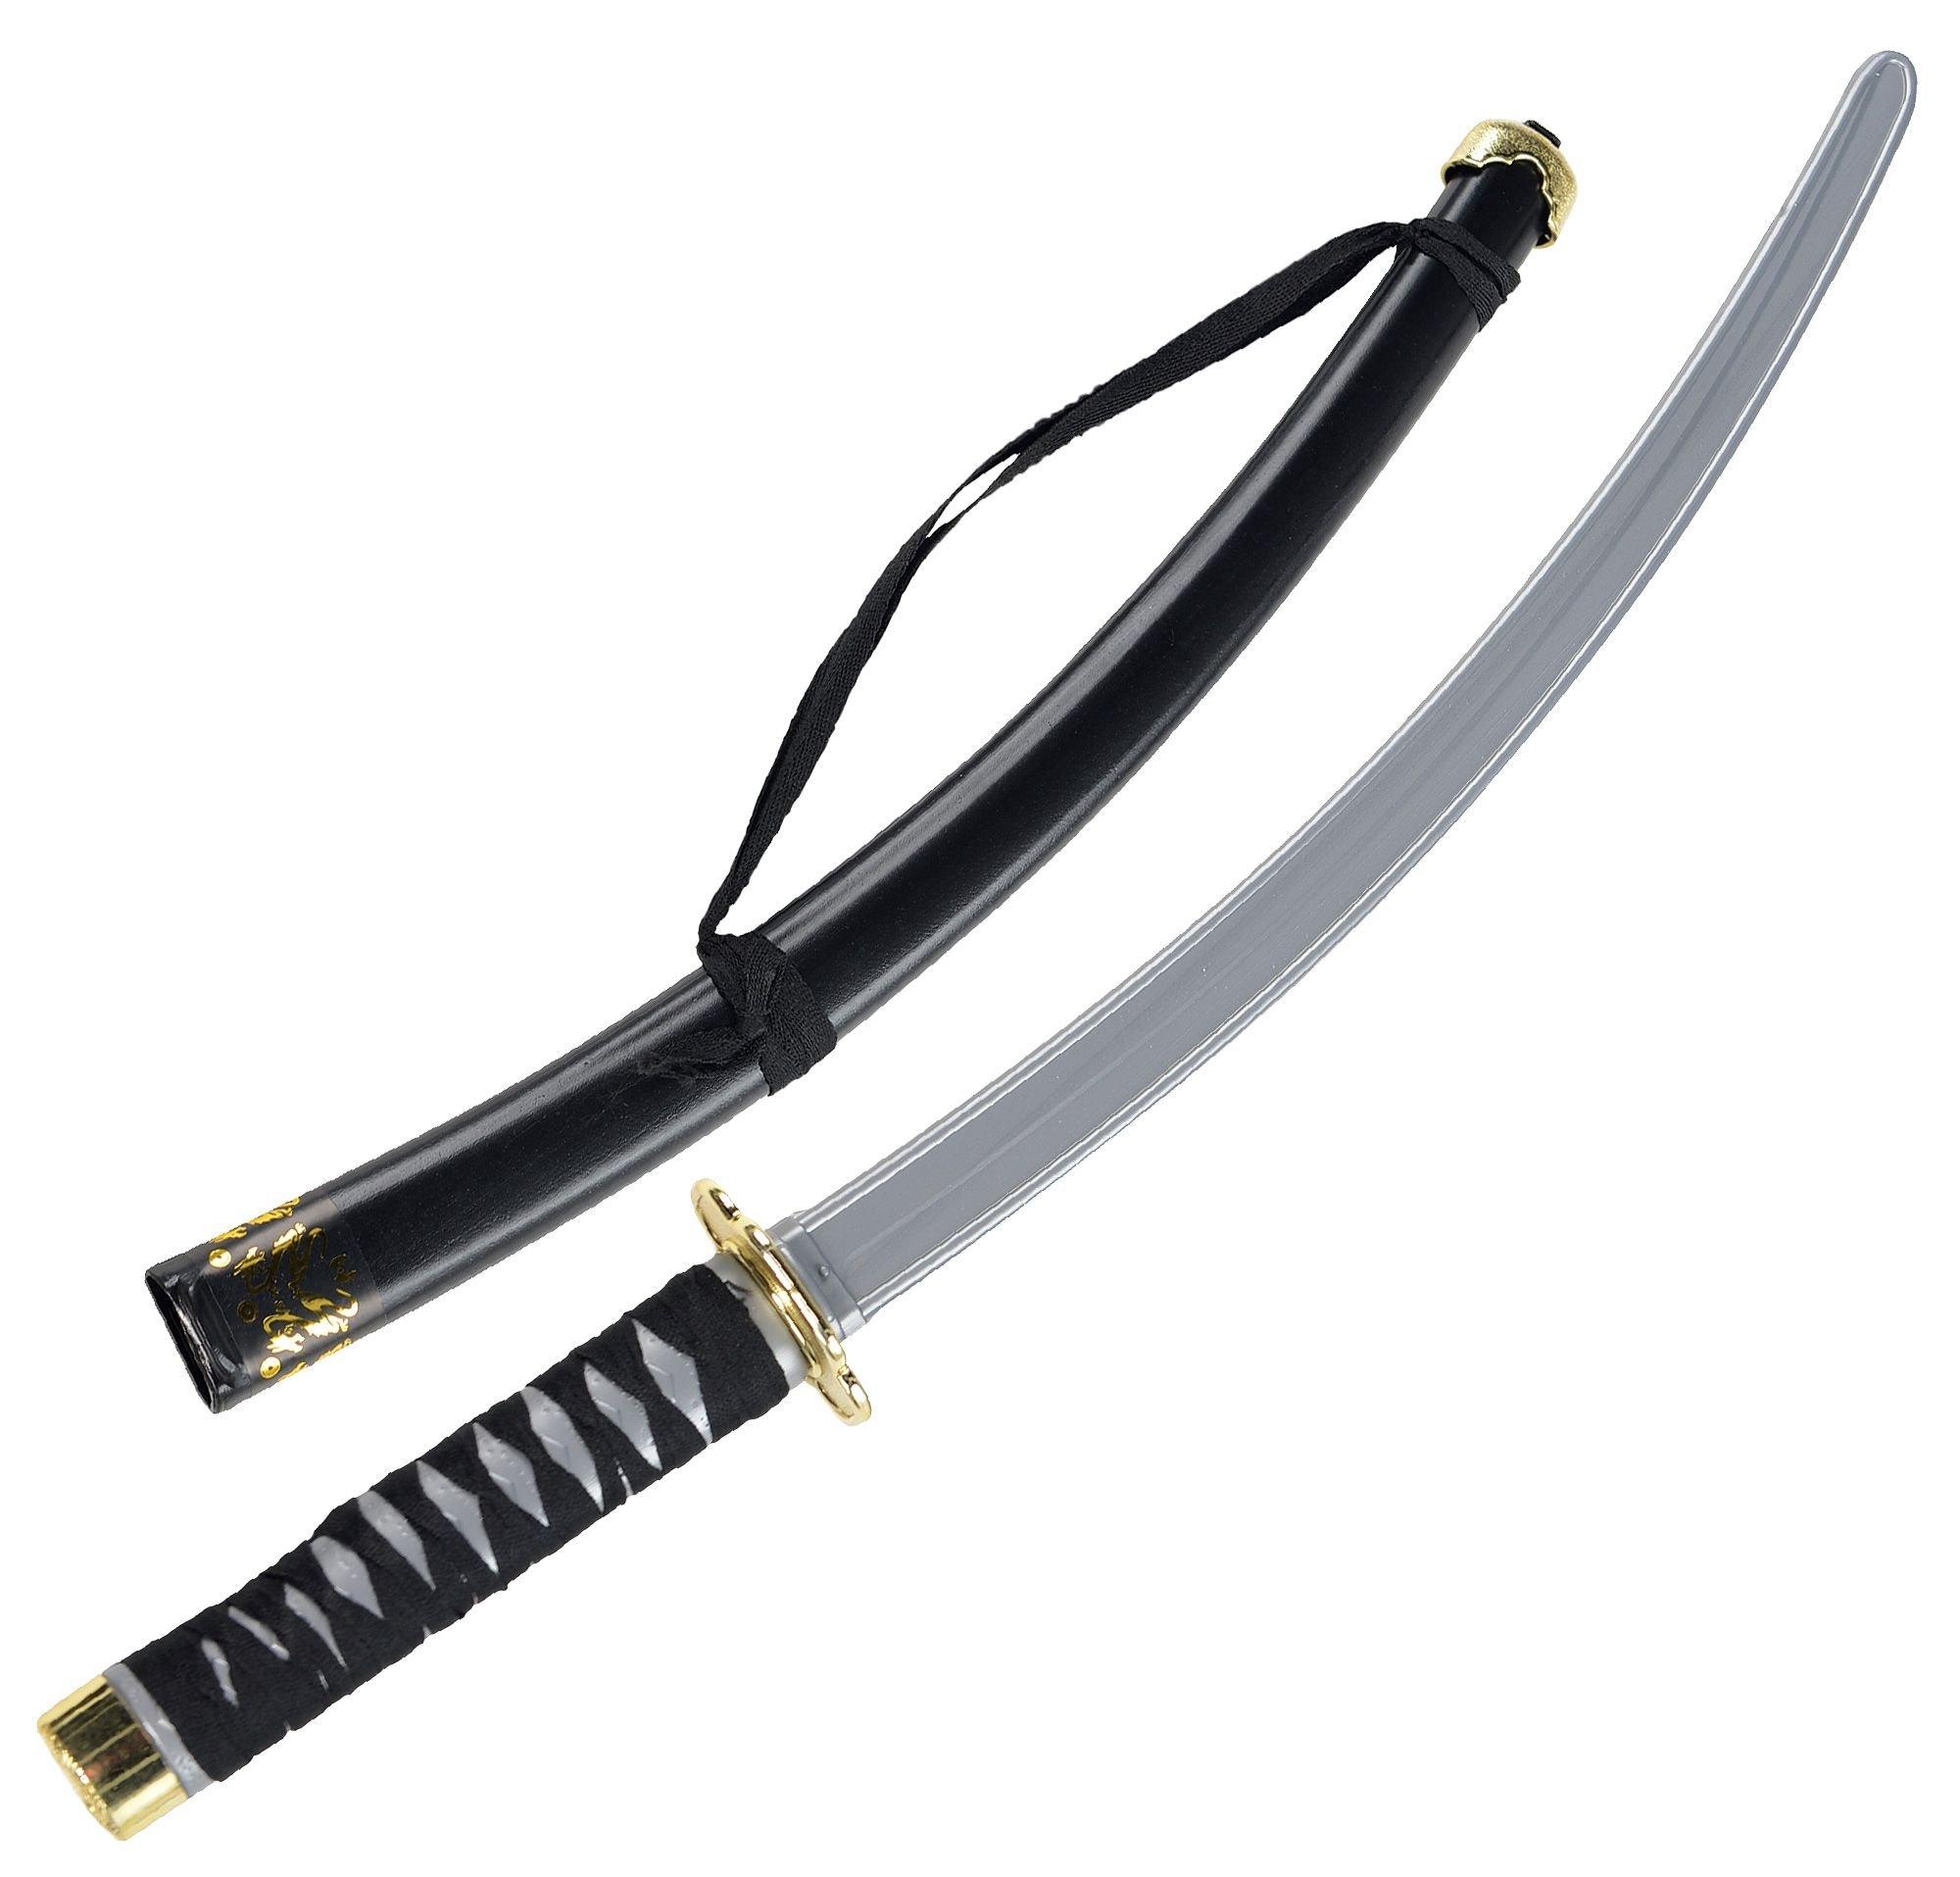 ninjutsu sword